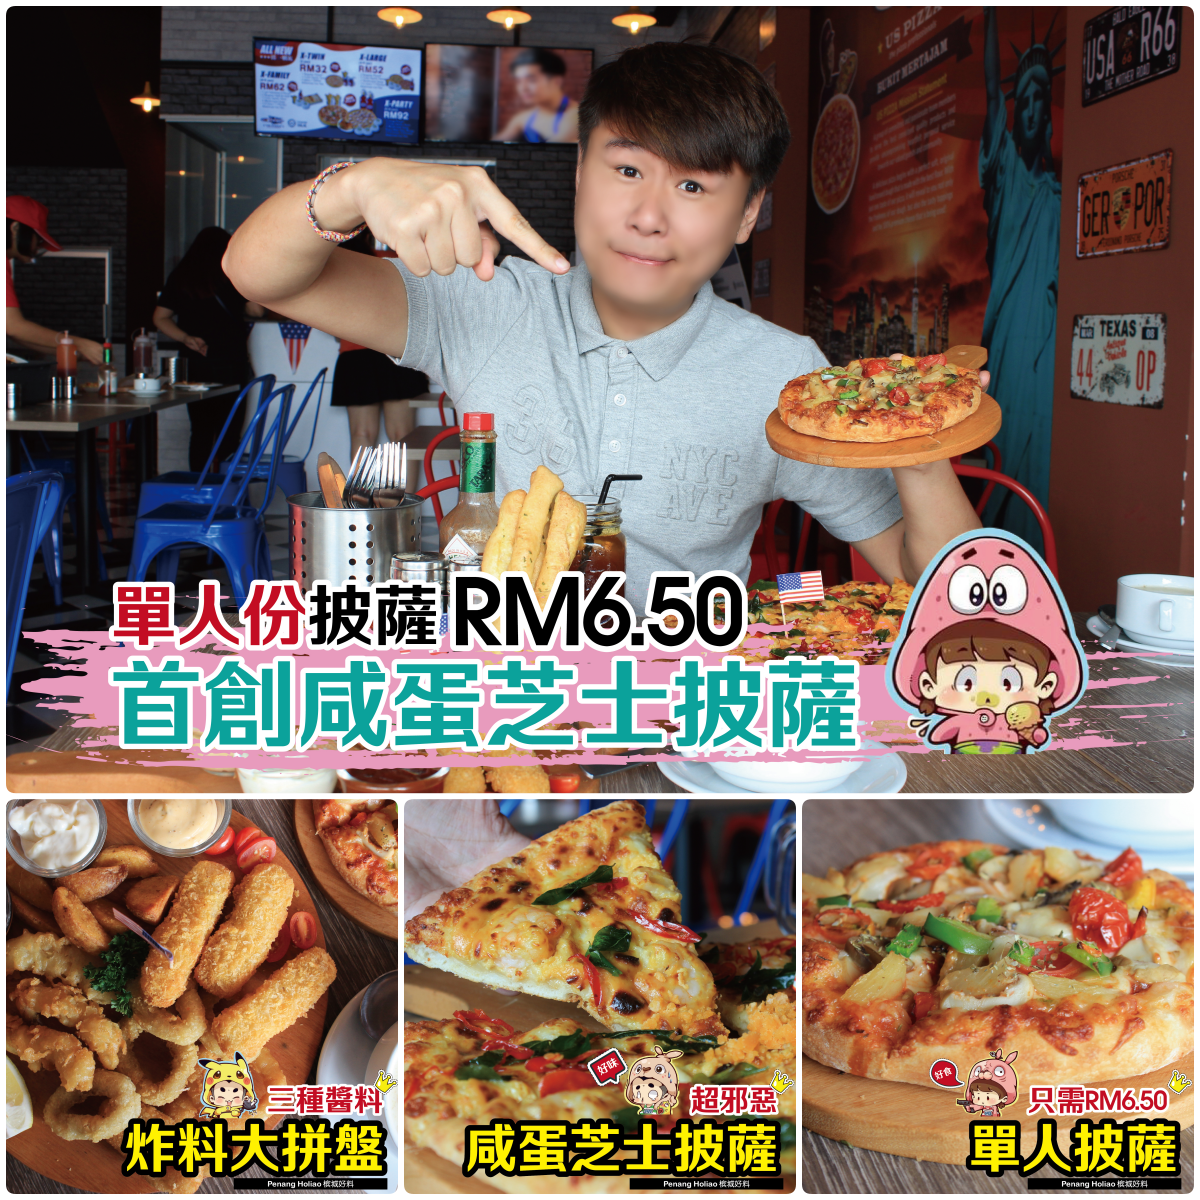 哇靠单人披萨🍕一份只需RM6.50！！